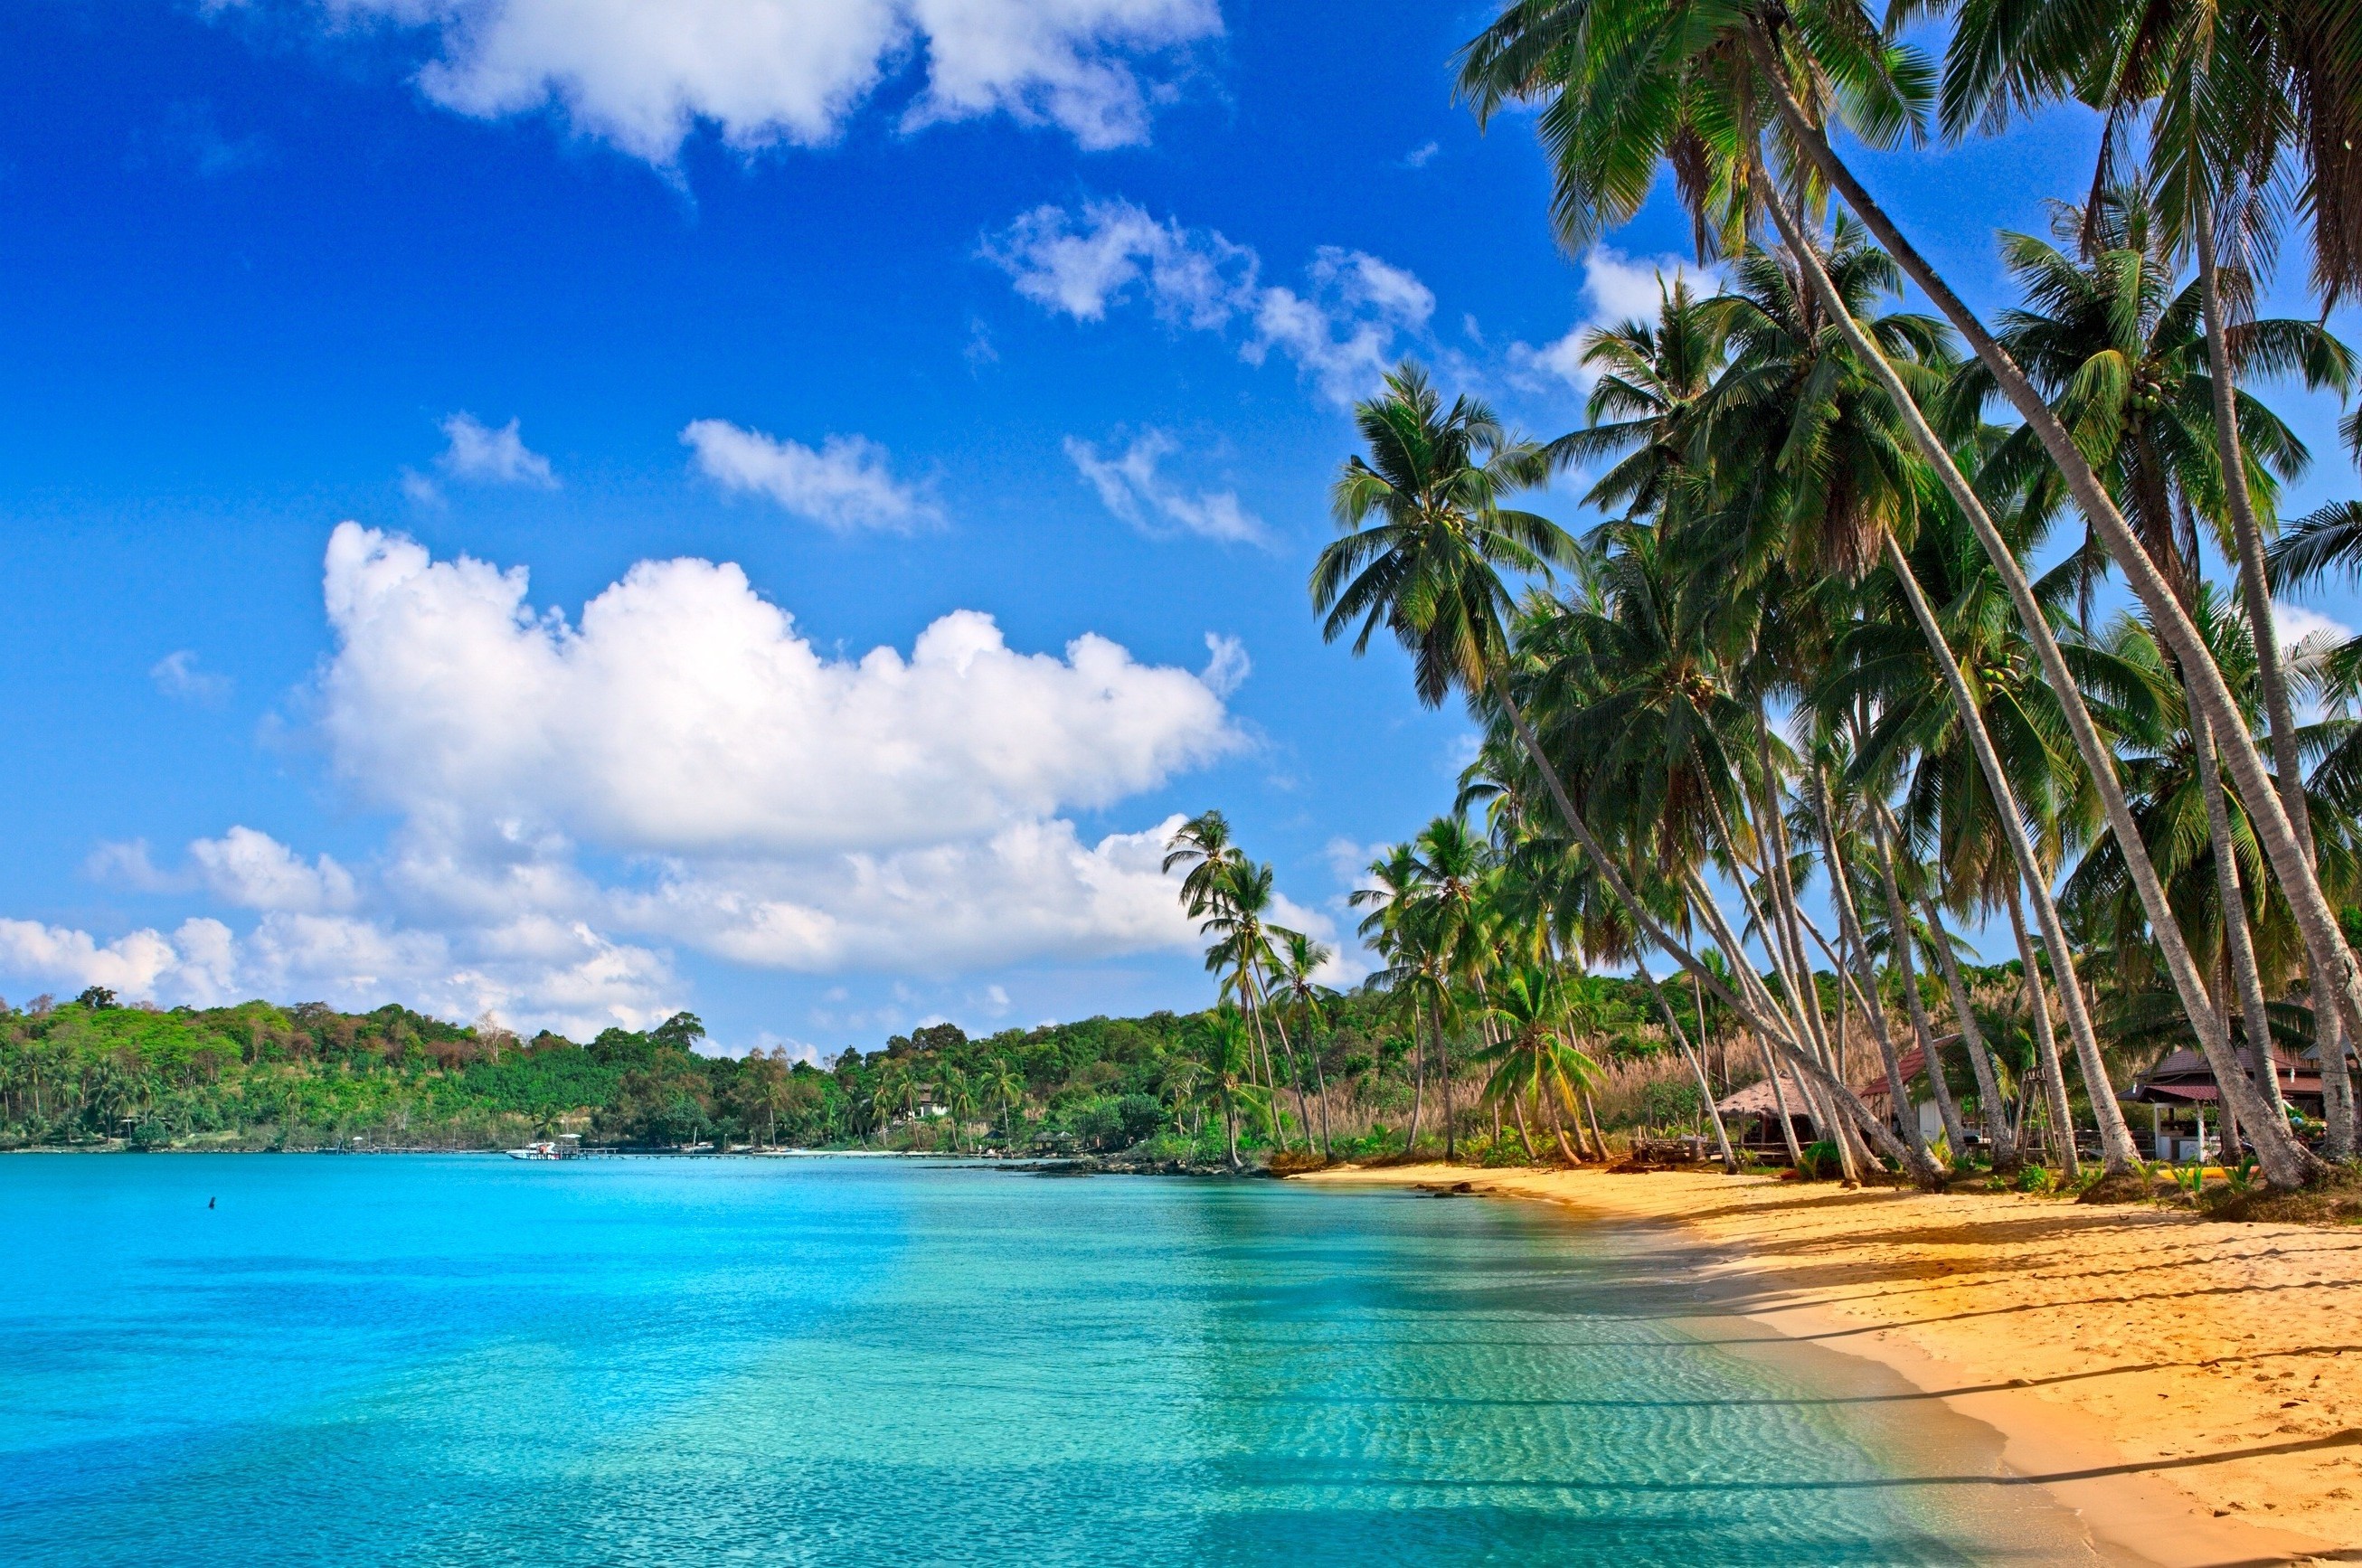 Песчаный желтый пляж с пальмами у голубого моря